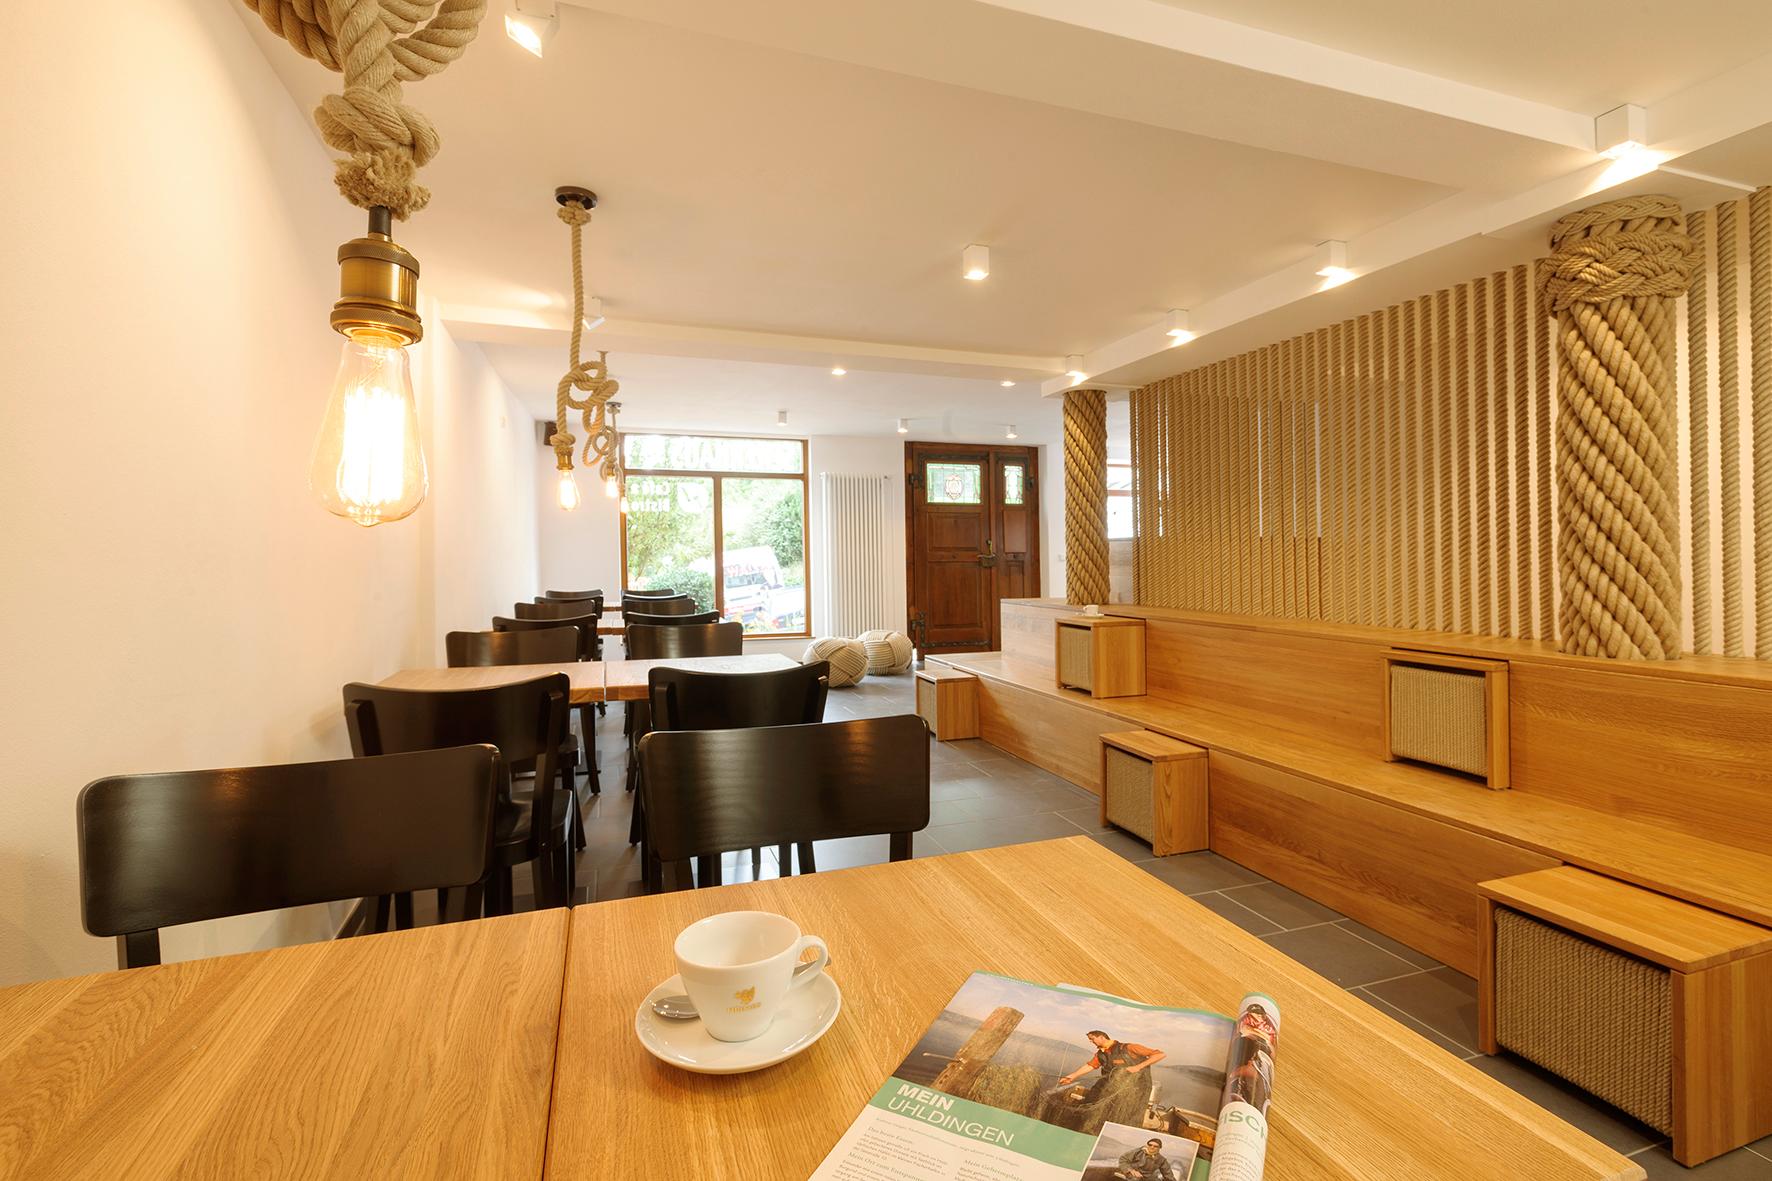 Café / Bistro mit Details aus der Seilereimanufaktur #sitzbank ©Spaett Architekten